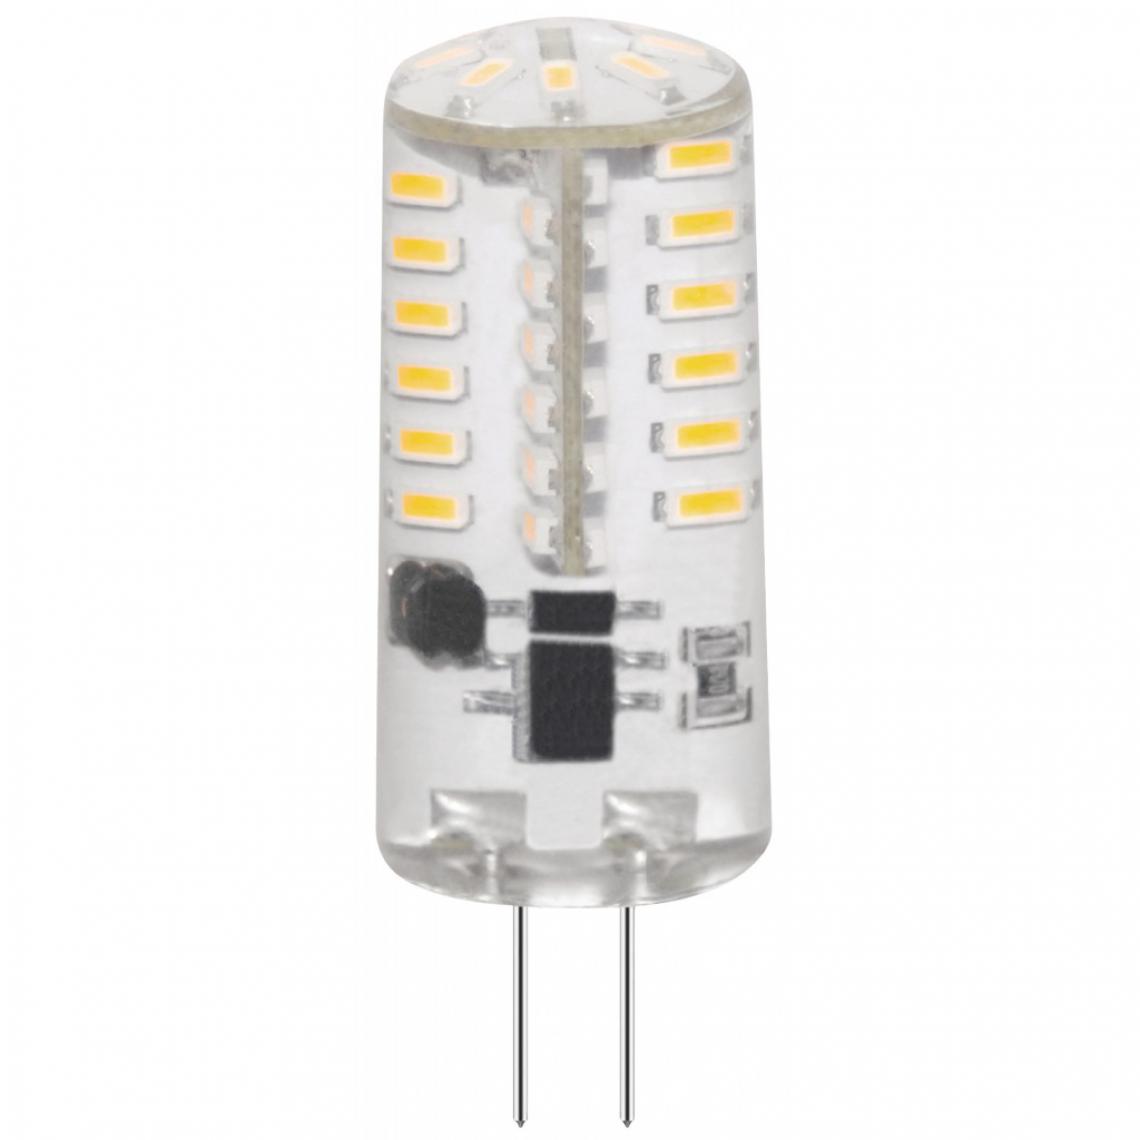 Alpexe - Ampoule LED G4 Capsule 3 W 305 lm 3000 K - Ampoules LED